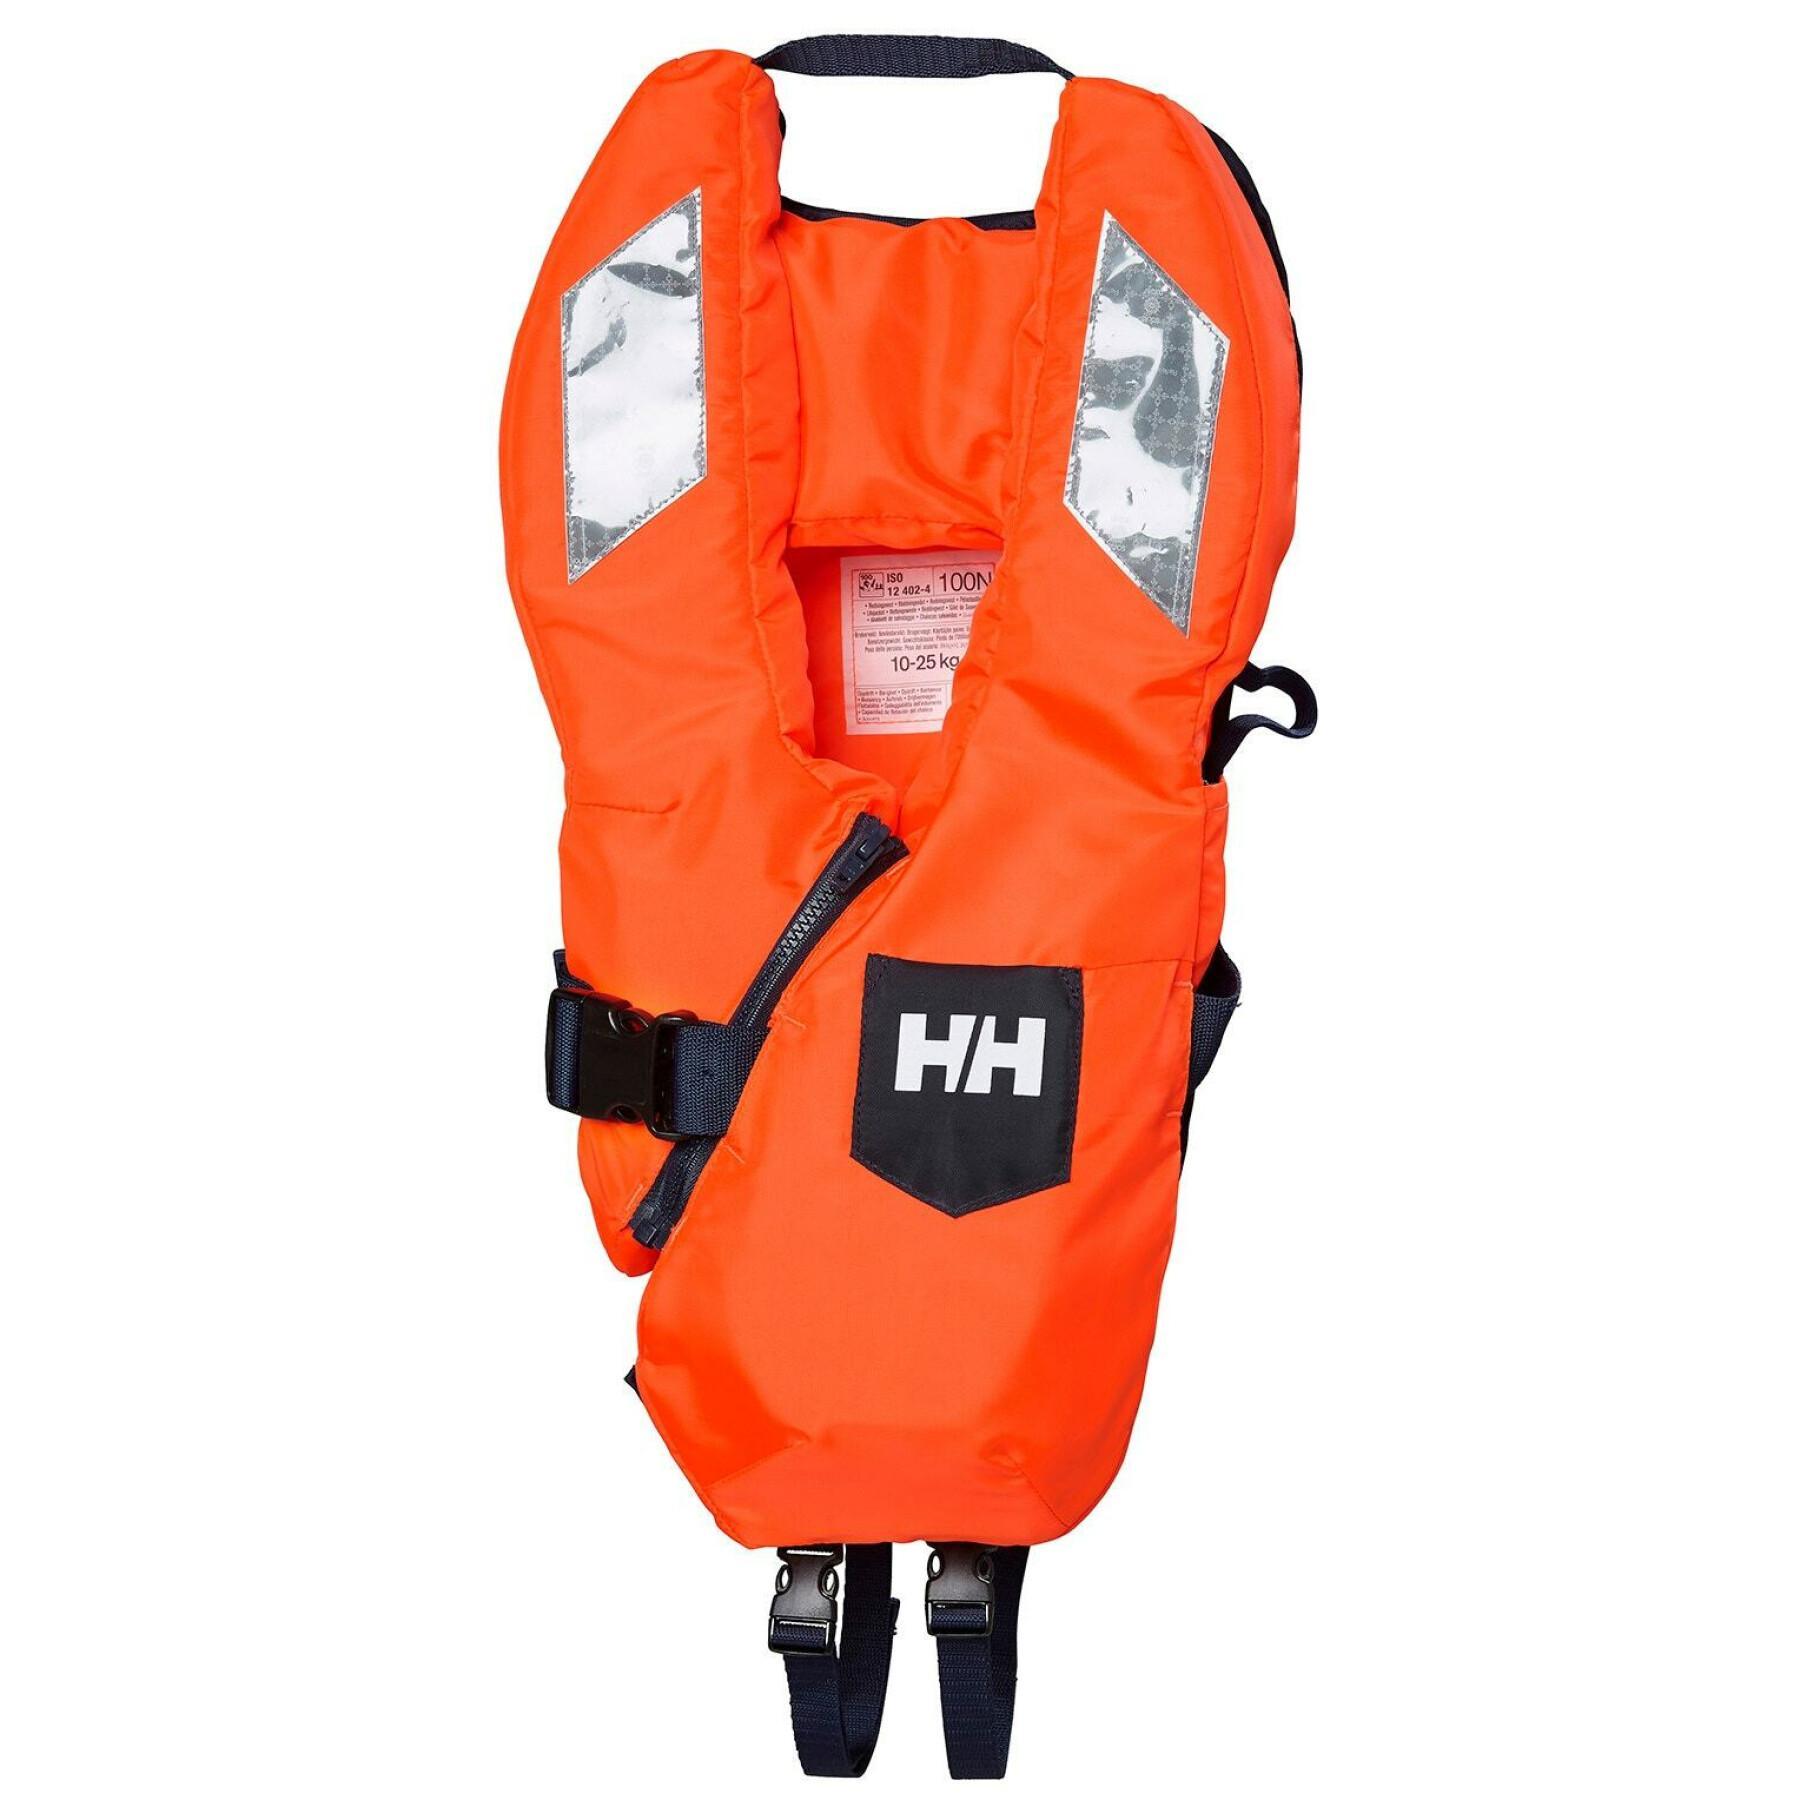 Children's lifejacket Helly Hansen Safe+